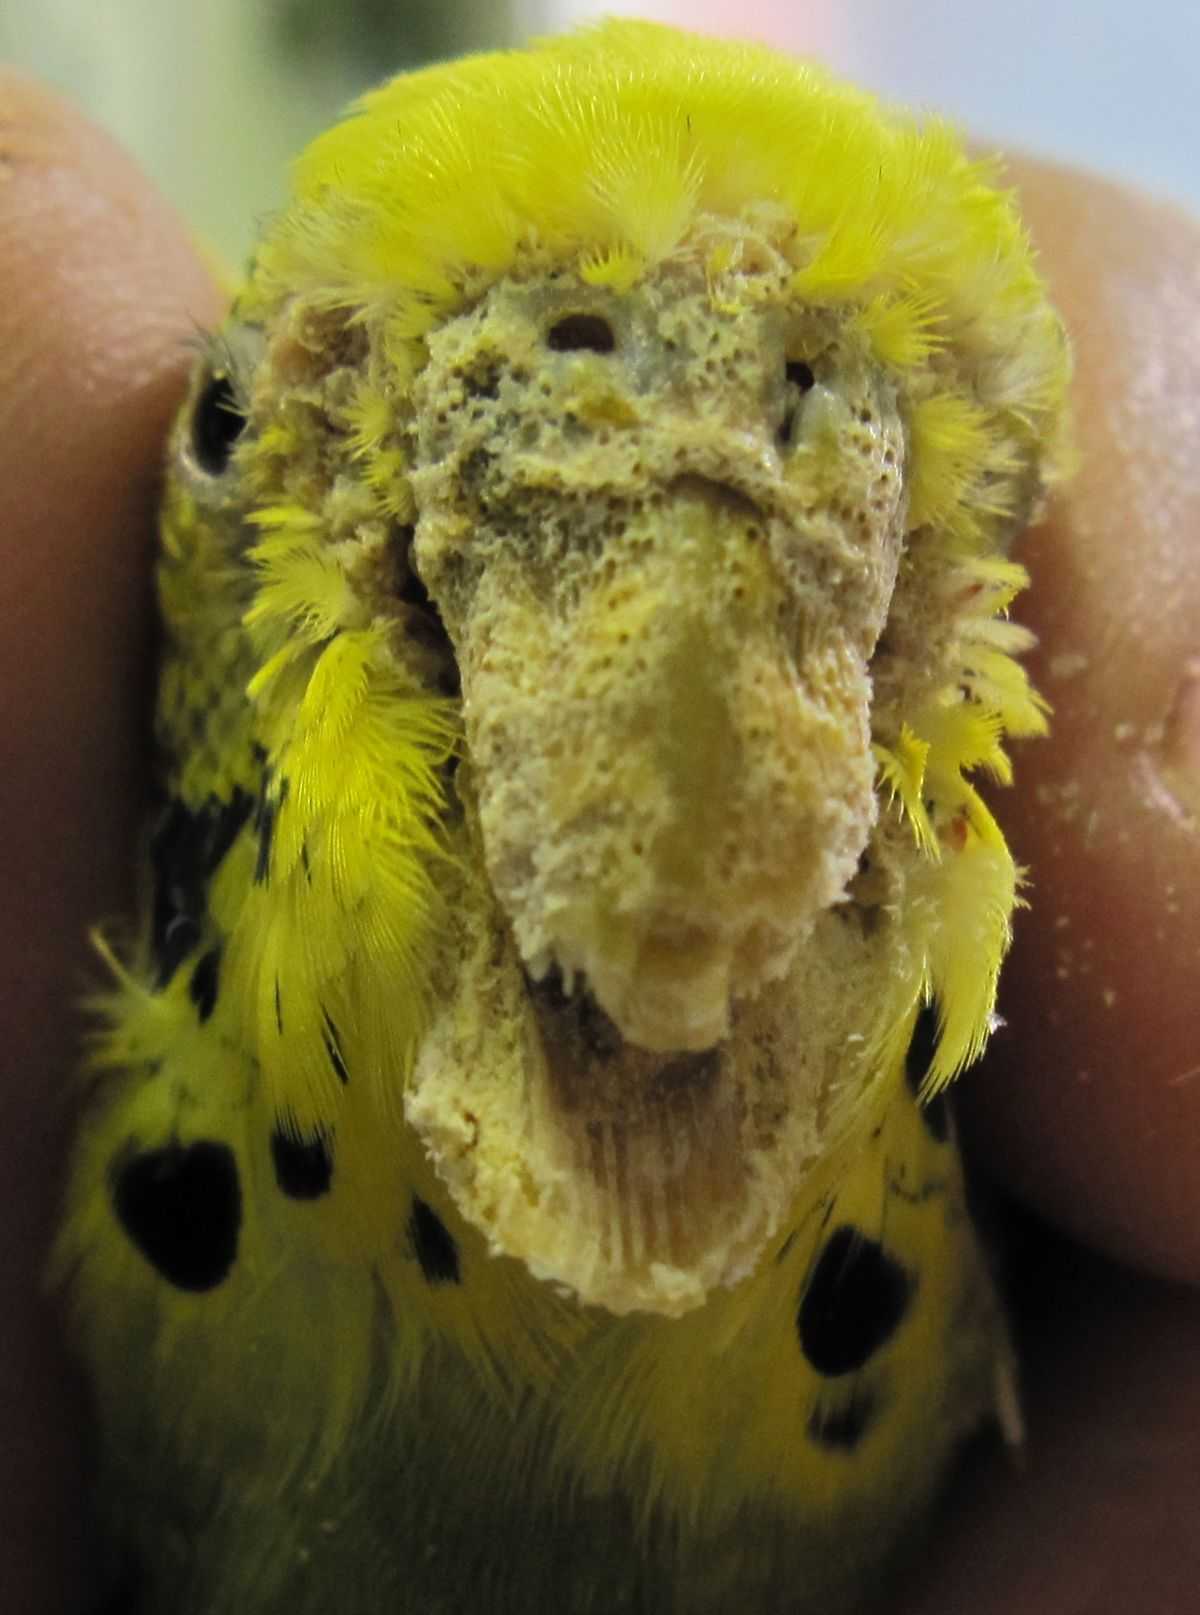 Восковица у волнистого попугая: сухая, нарост, шелушится, потемнела